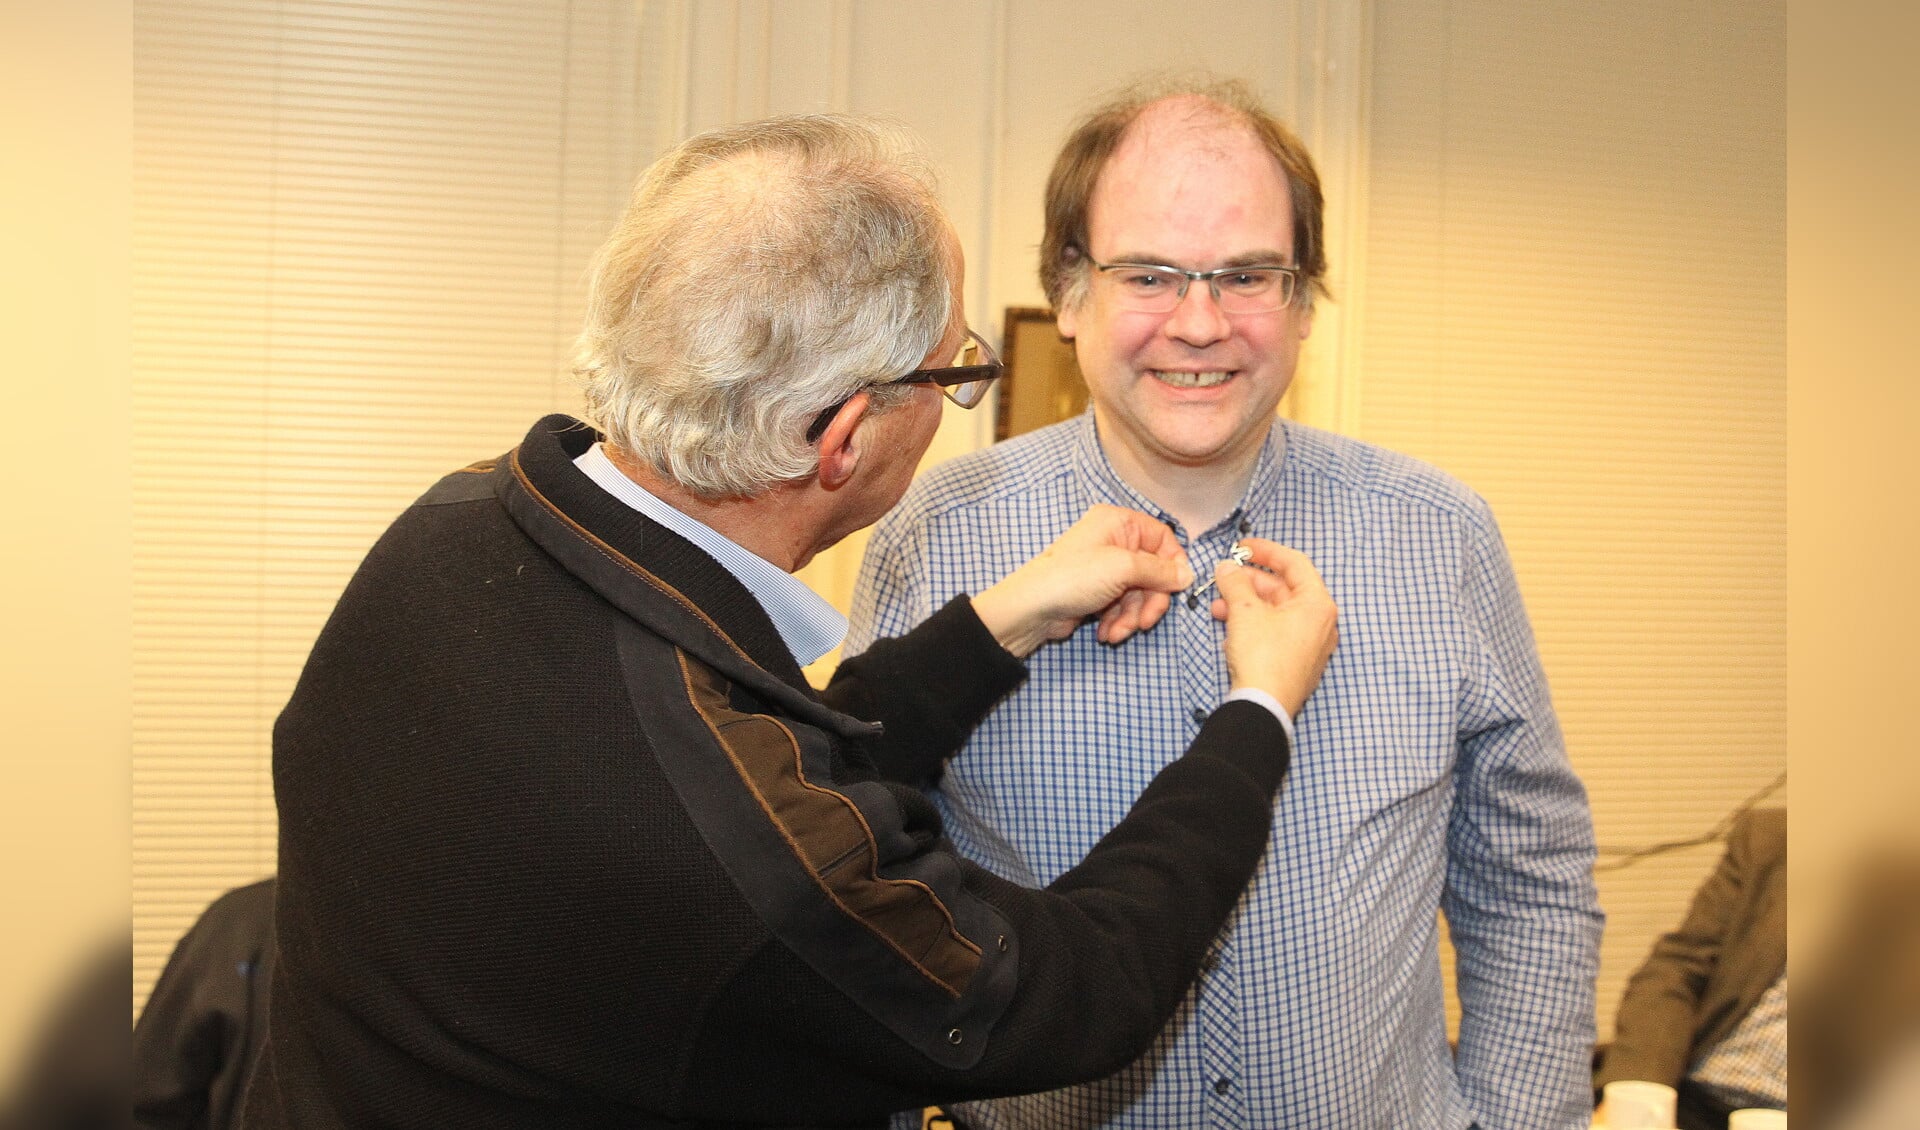 Rob Pex ontvangt de vrijwilligersspeld van de Cultuur-Historische Vereniging Oud Lisse uit handen van voorzitter Eric Prince.